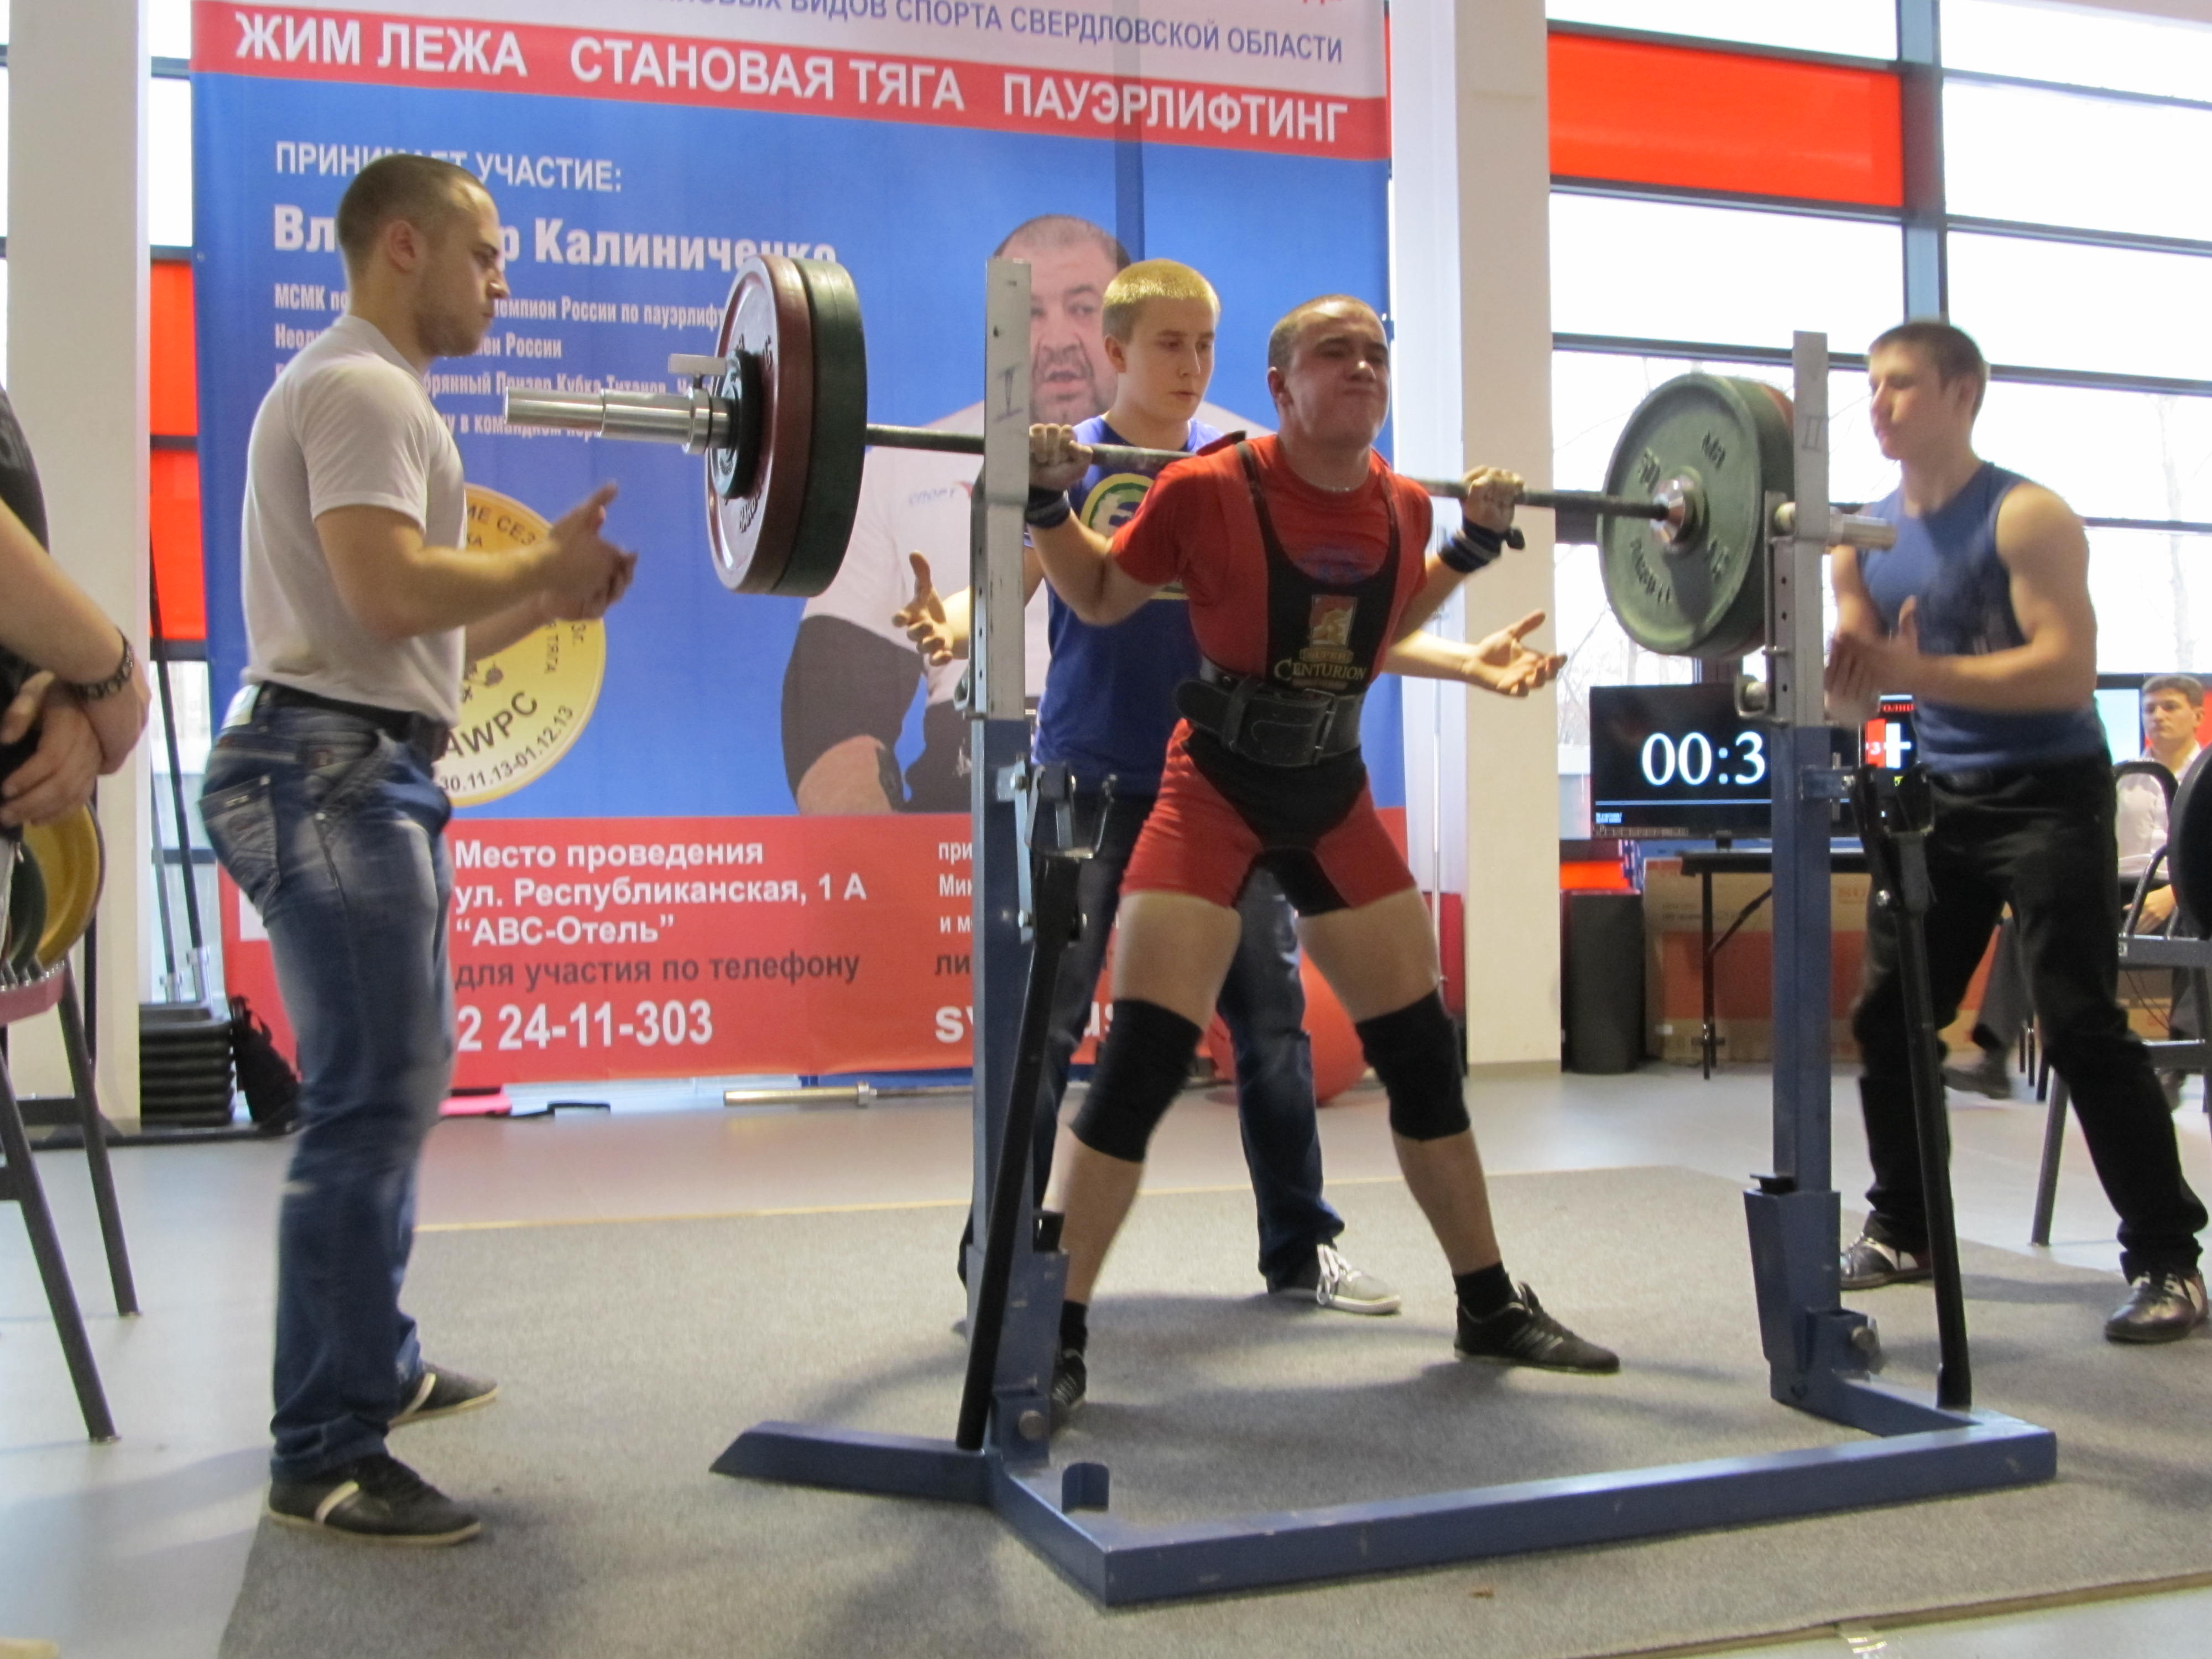 Первоуральцы приняли участие в чемпионате Свердловской области по пауэрлифтингу. Фото